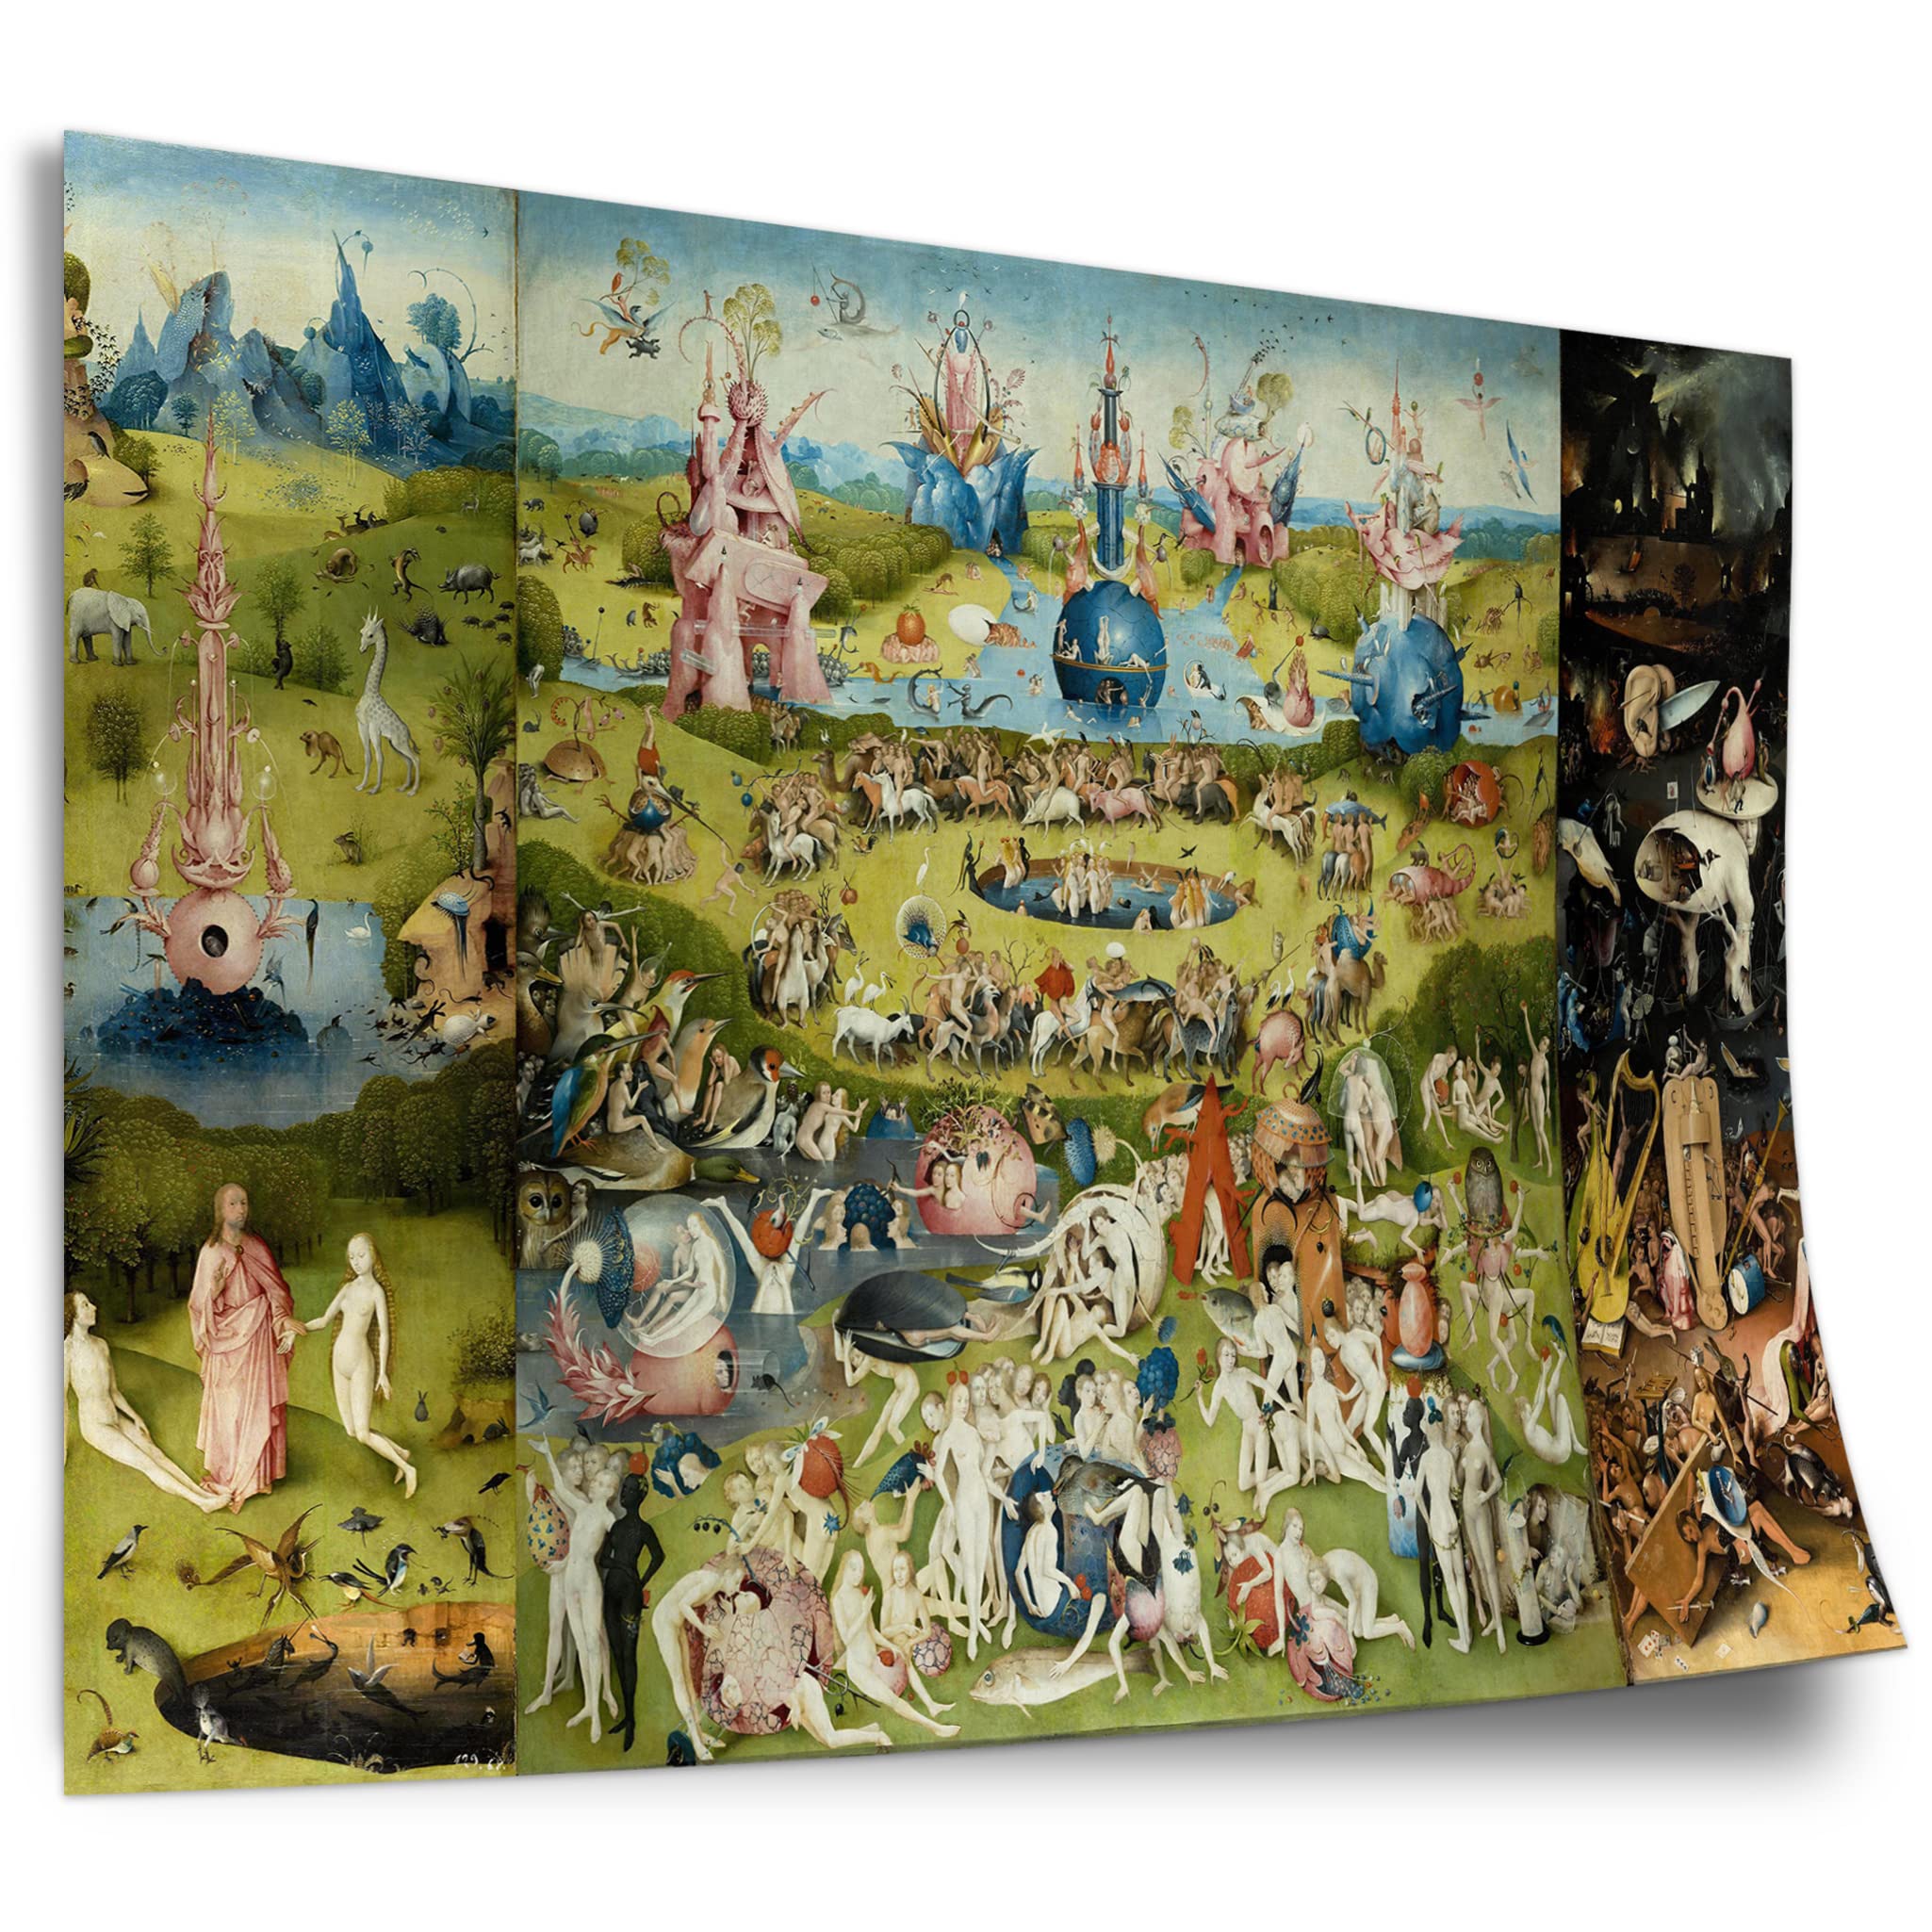 Printistico Poster Hieronymus Bosch - Der Garten der Lüste (1490/1510) - Alle DREI Tafeln Kunstdruck ohne Rahmen, Wandbild - A4, A3, A2, A1, A0, XXL - Wohnzimmer, Schlafzimmer, Küche, Deko